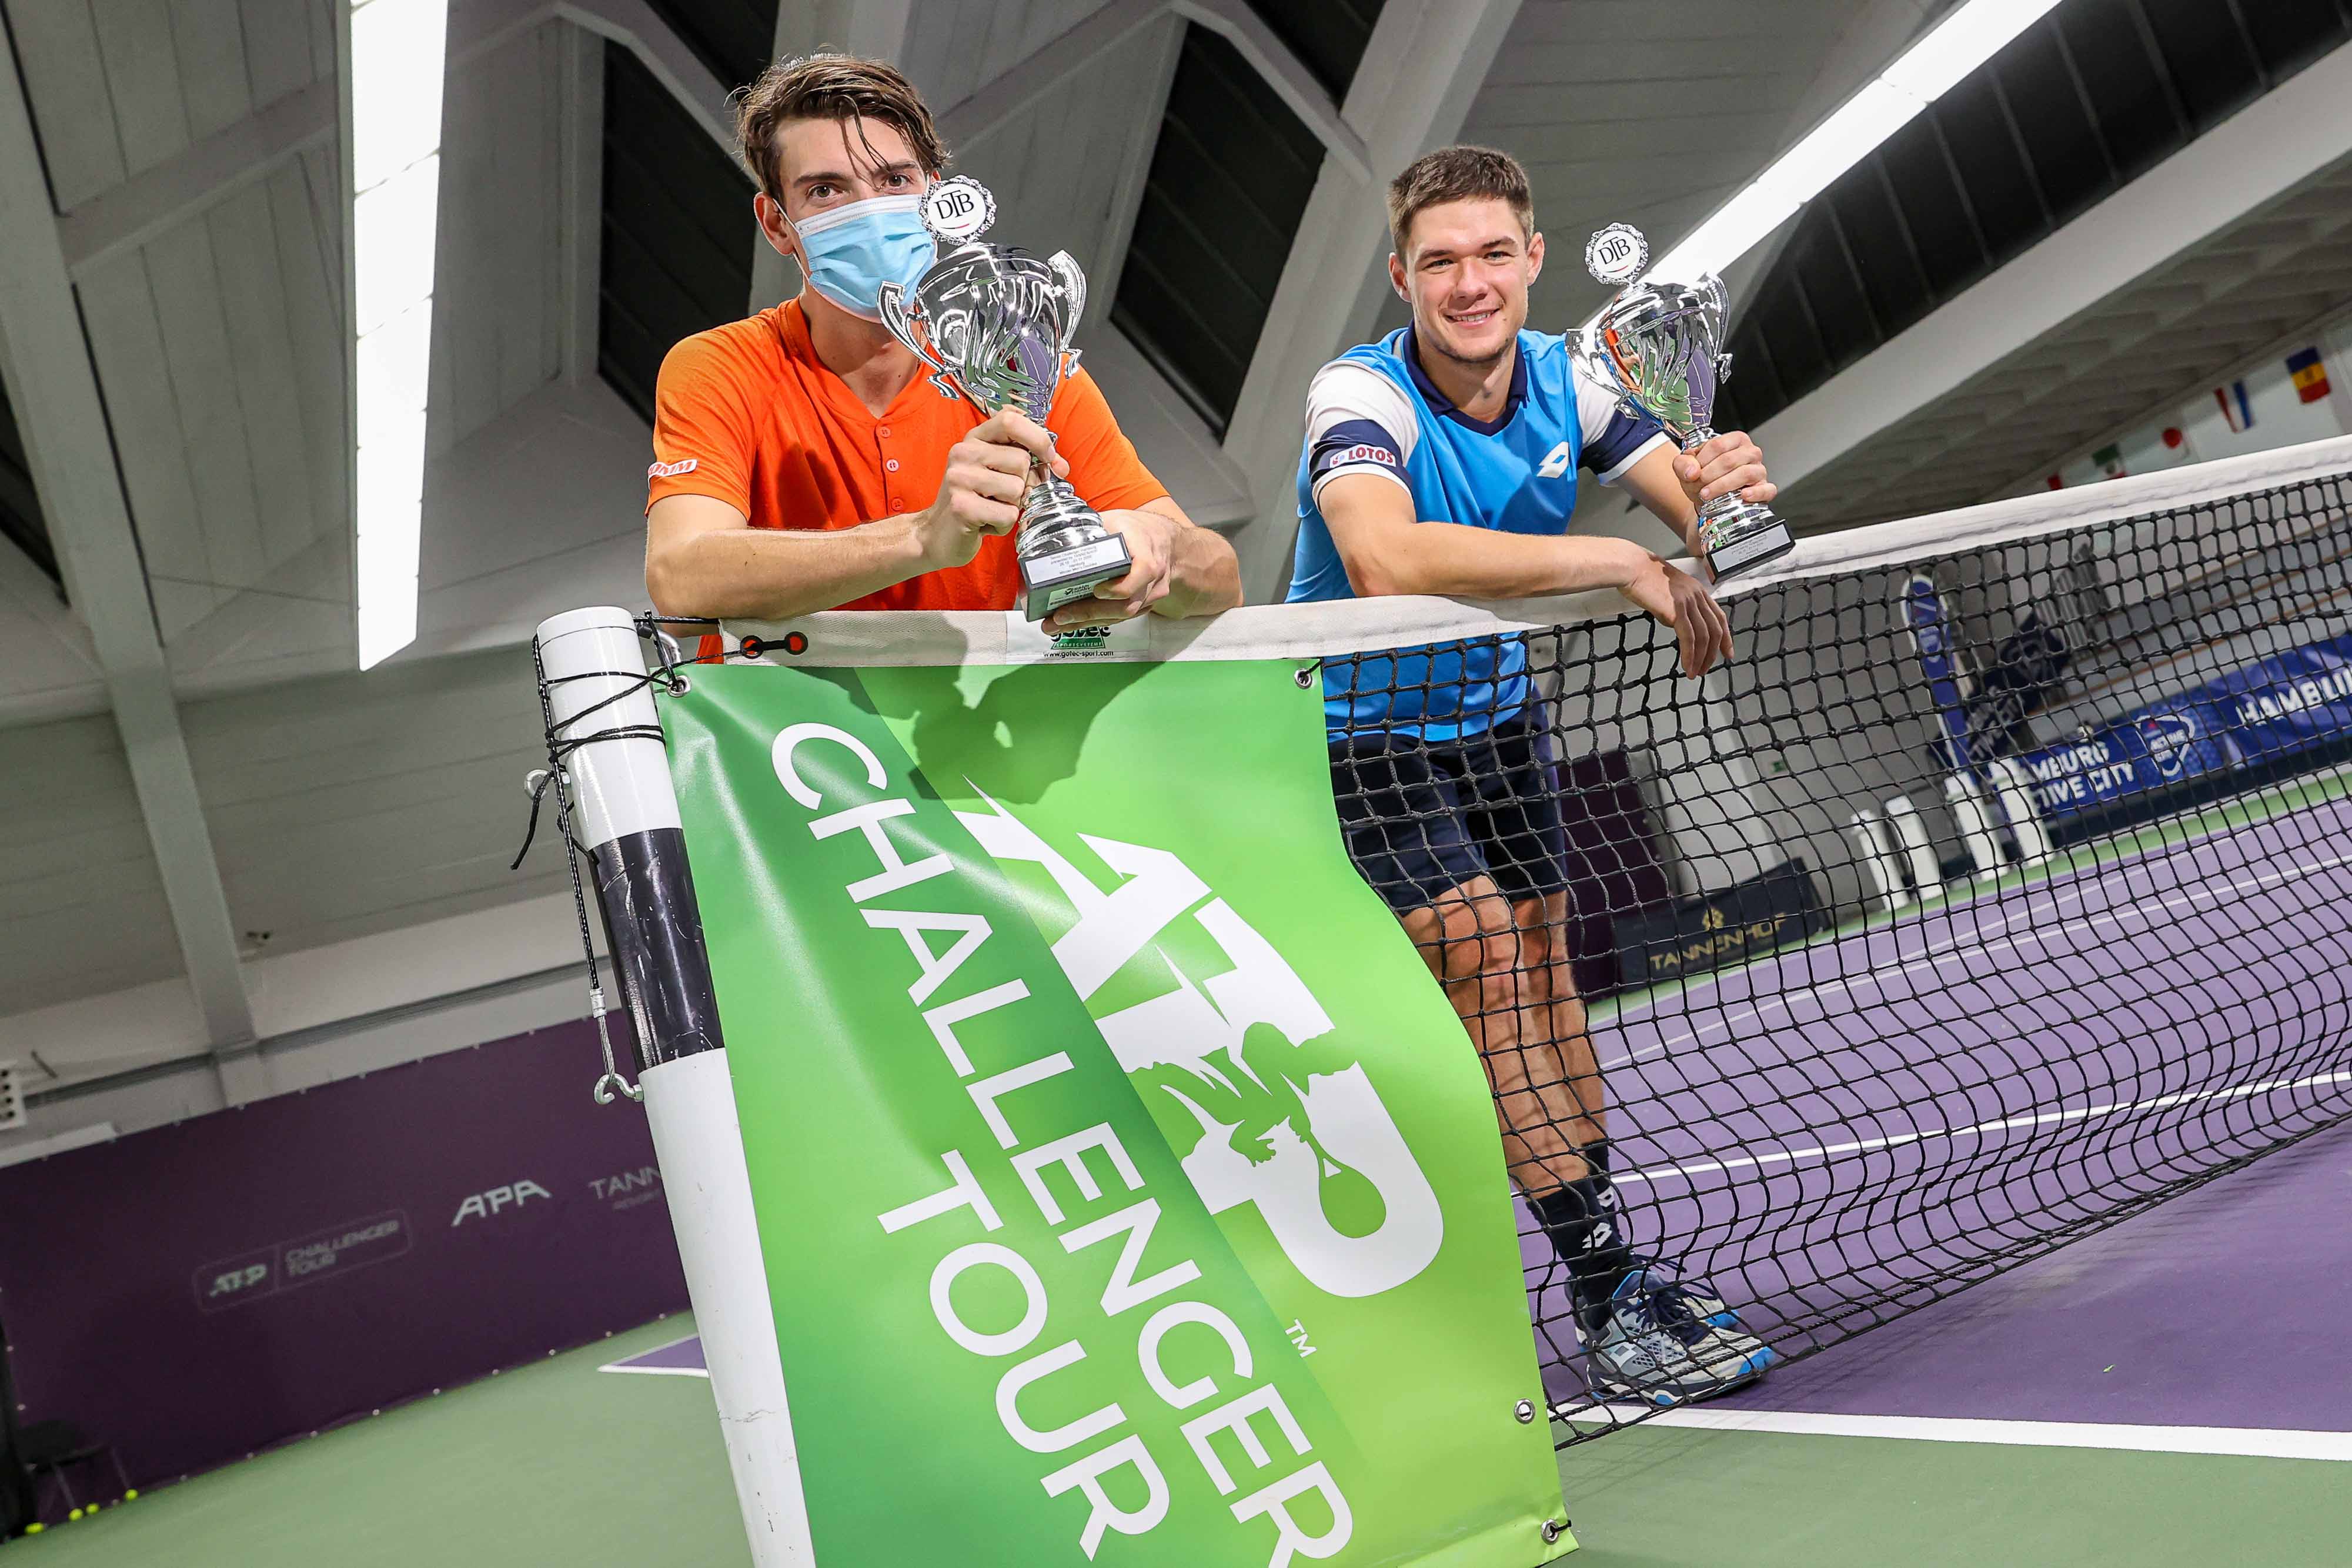 Tennis Challenger Hamburg presented by Tannenhof Ofner und Daniel im Finale, Huesler/Majchrzak holen Doppeltitel